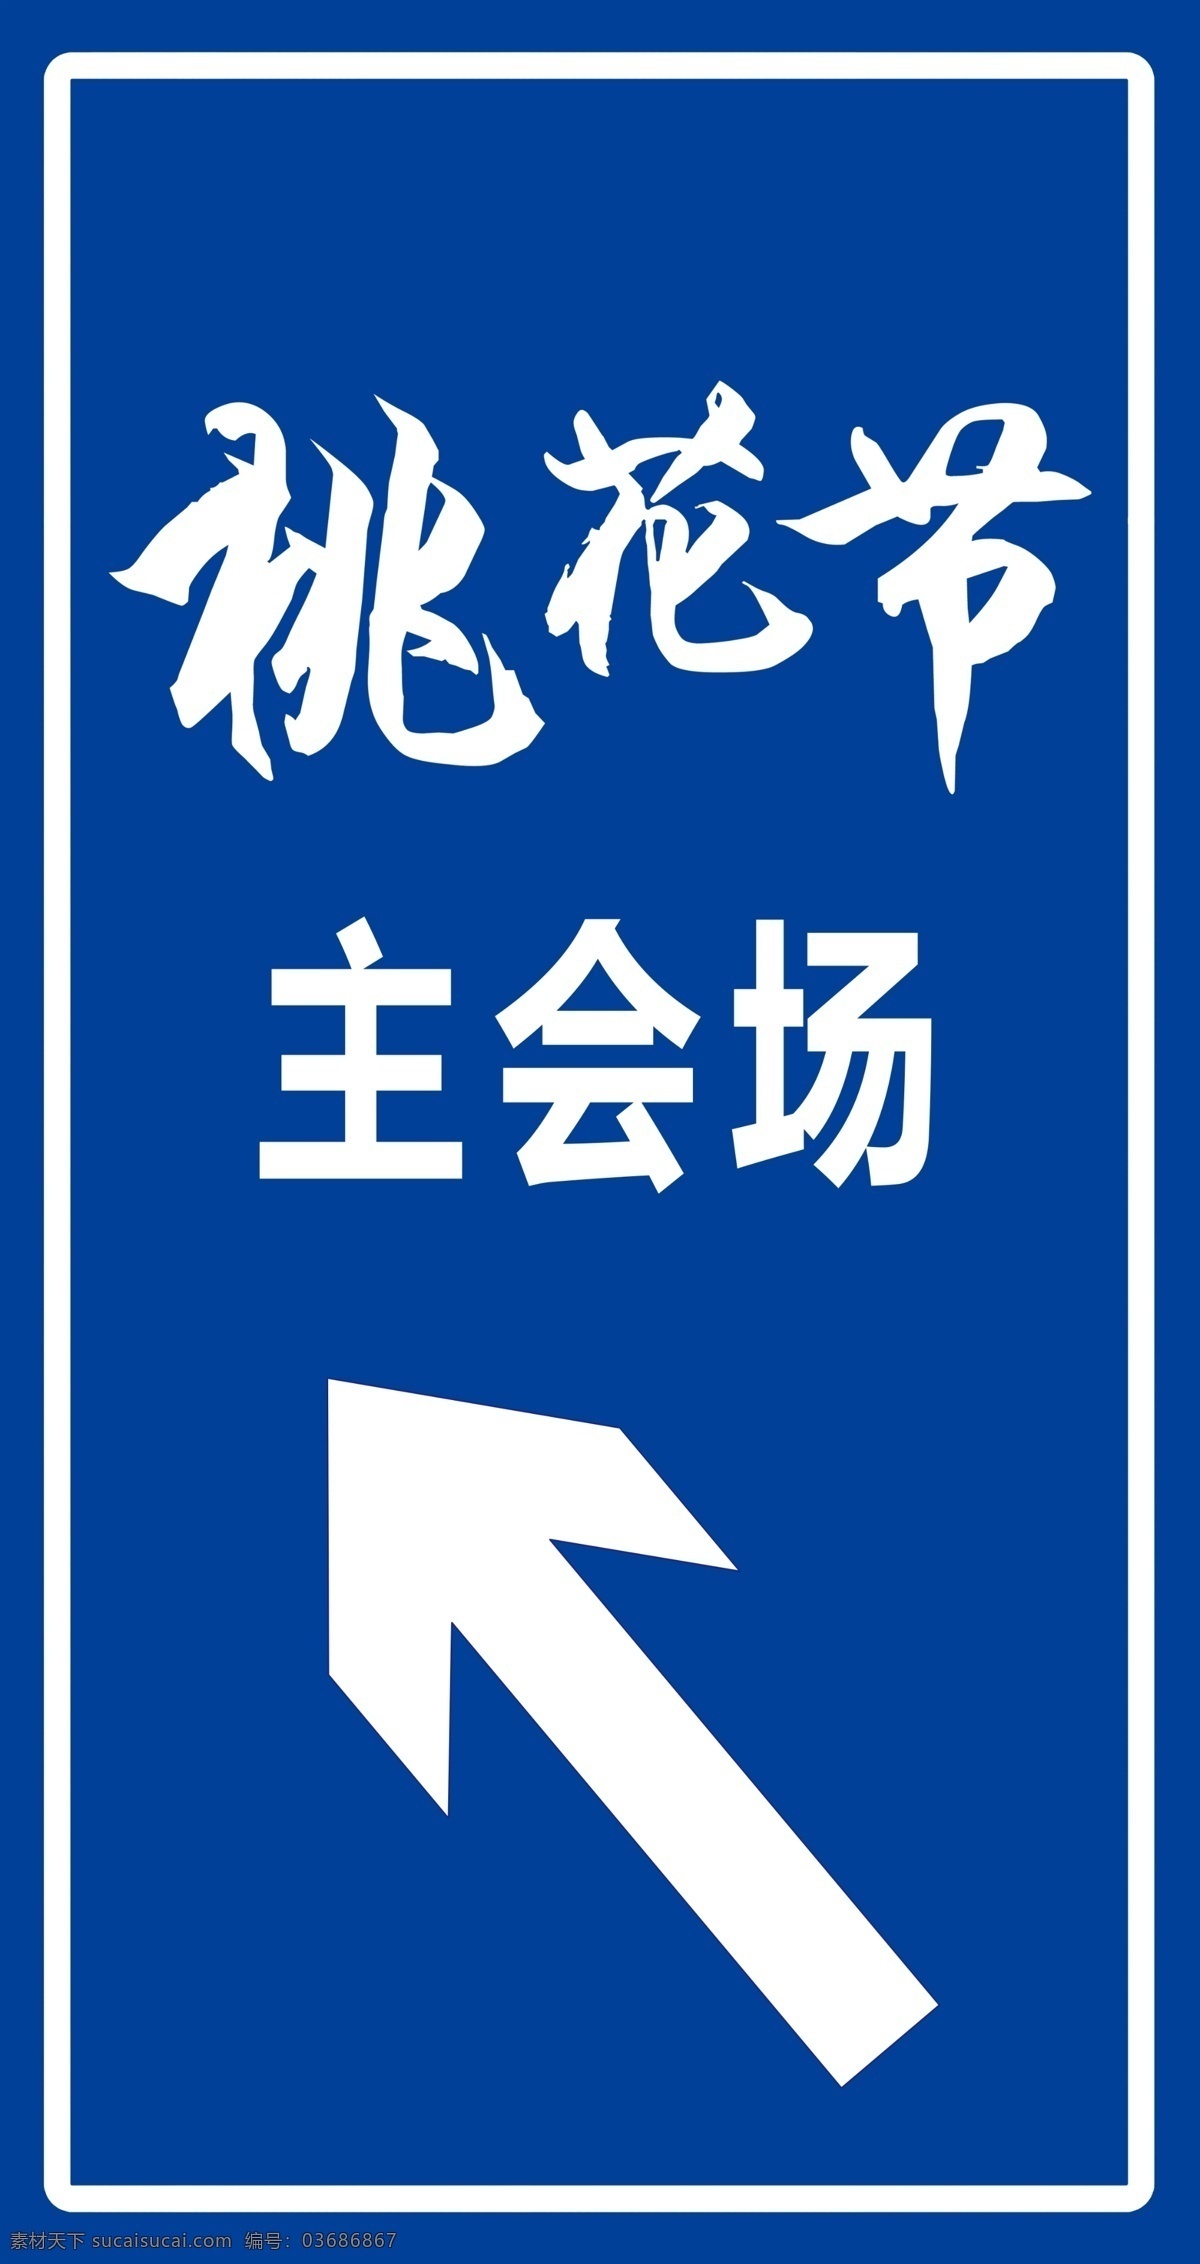 桃花节指示牌 桃花节 指示 箭头 主会场 蓝色 交通 标志 标识 指示牌 方向 标志图标 公共标识标志